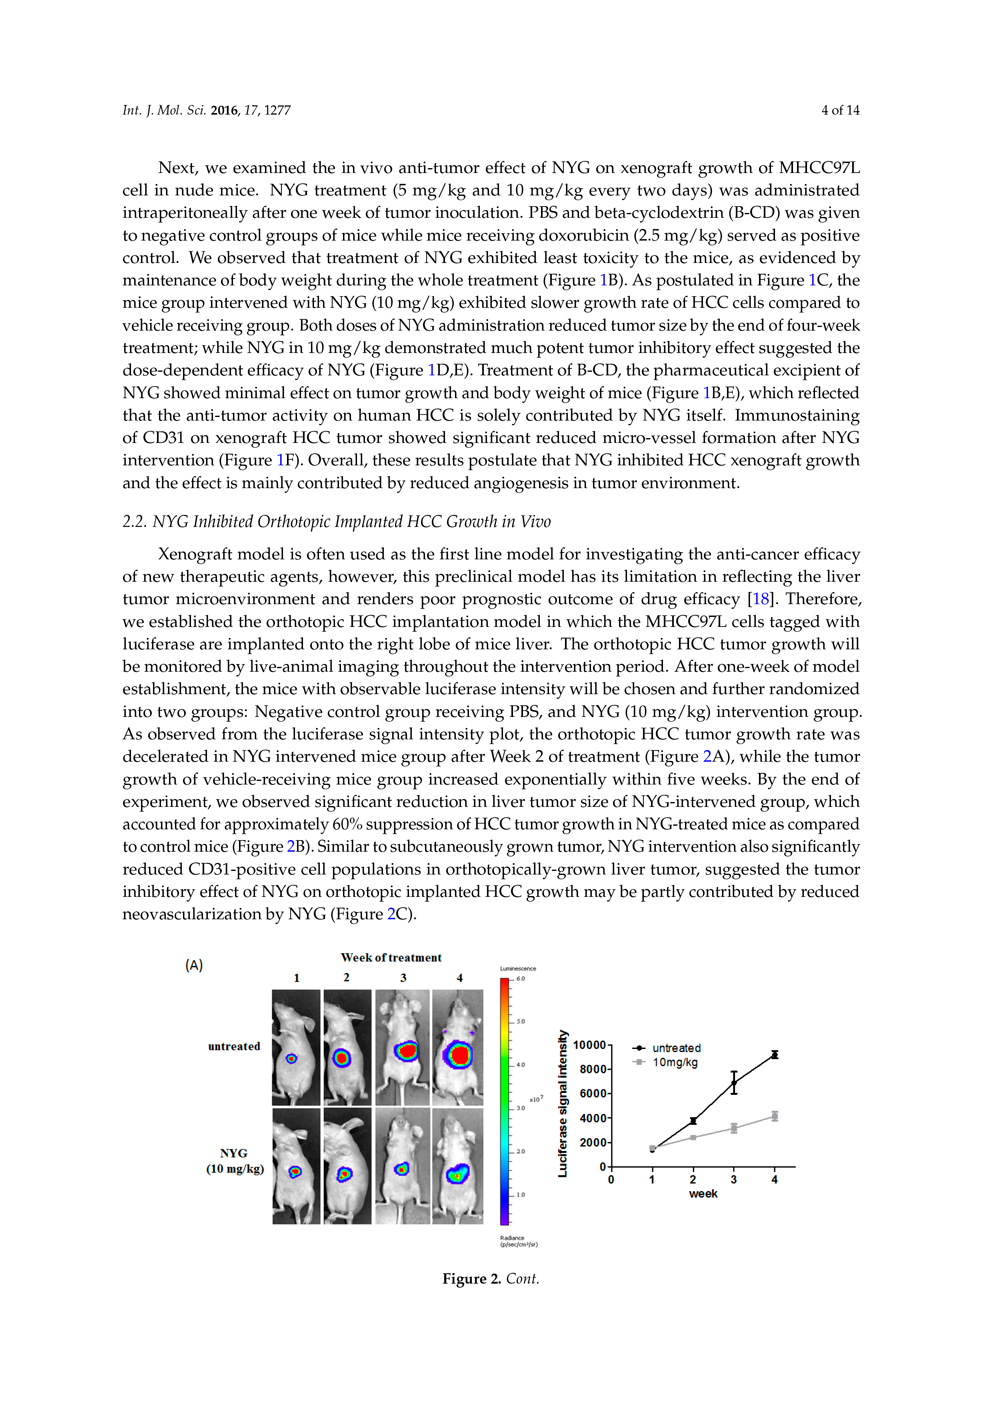 ノコギリヤシ色素の肝細胞がんへの補助療法の可能性 ページ4